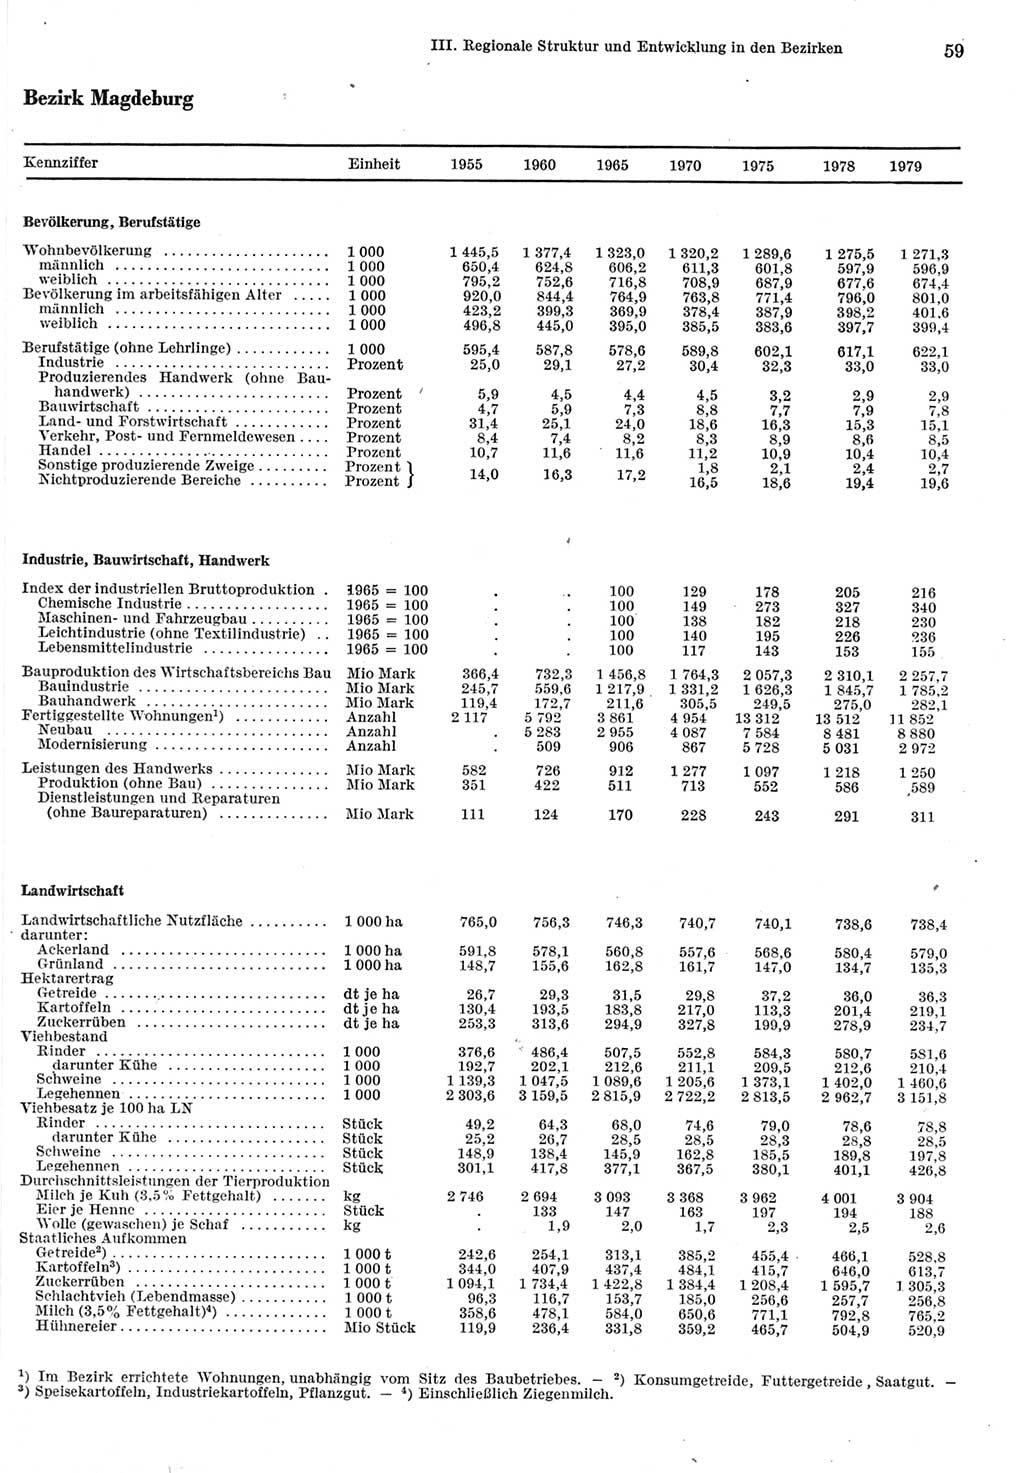 Statistisches Jahrbuch der Deutschen Demokratischen Republik (DDR) 1980, Seite 59 (Stat. Jb. DDR 1980, S. 59)